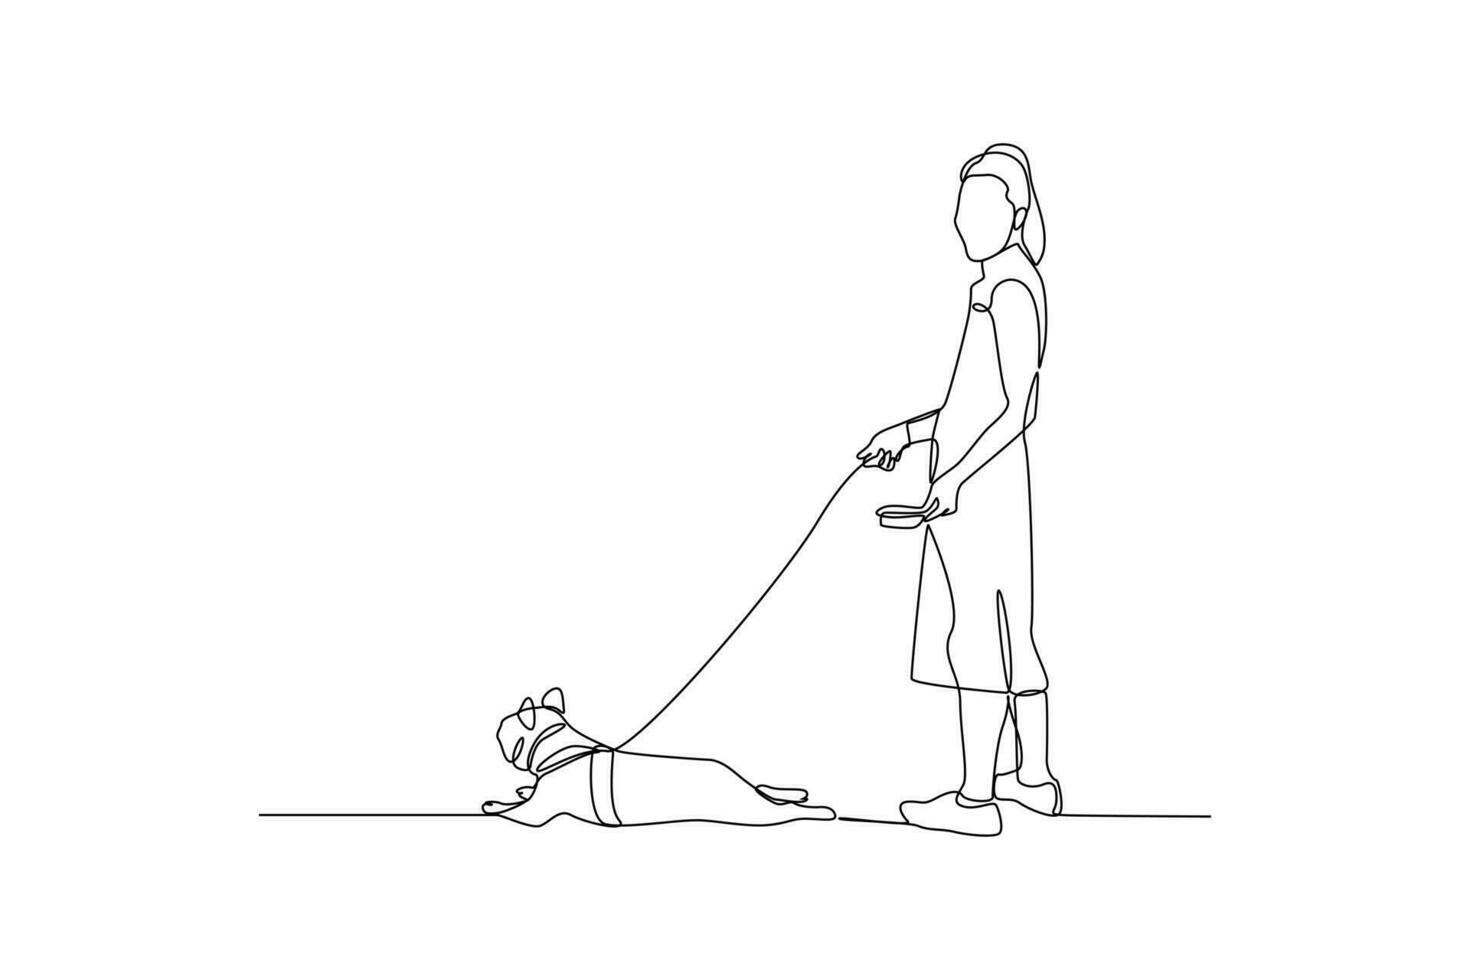 soltero una línea dibujo mujer dando su mascota alimento. urbano mascota concepto. continuo línea dibujar diseño gráfico vector ilustración.